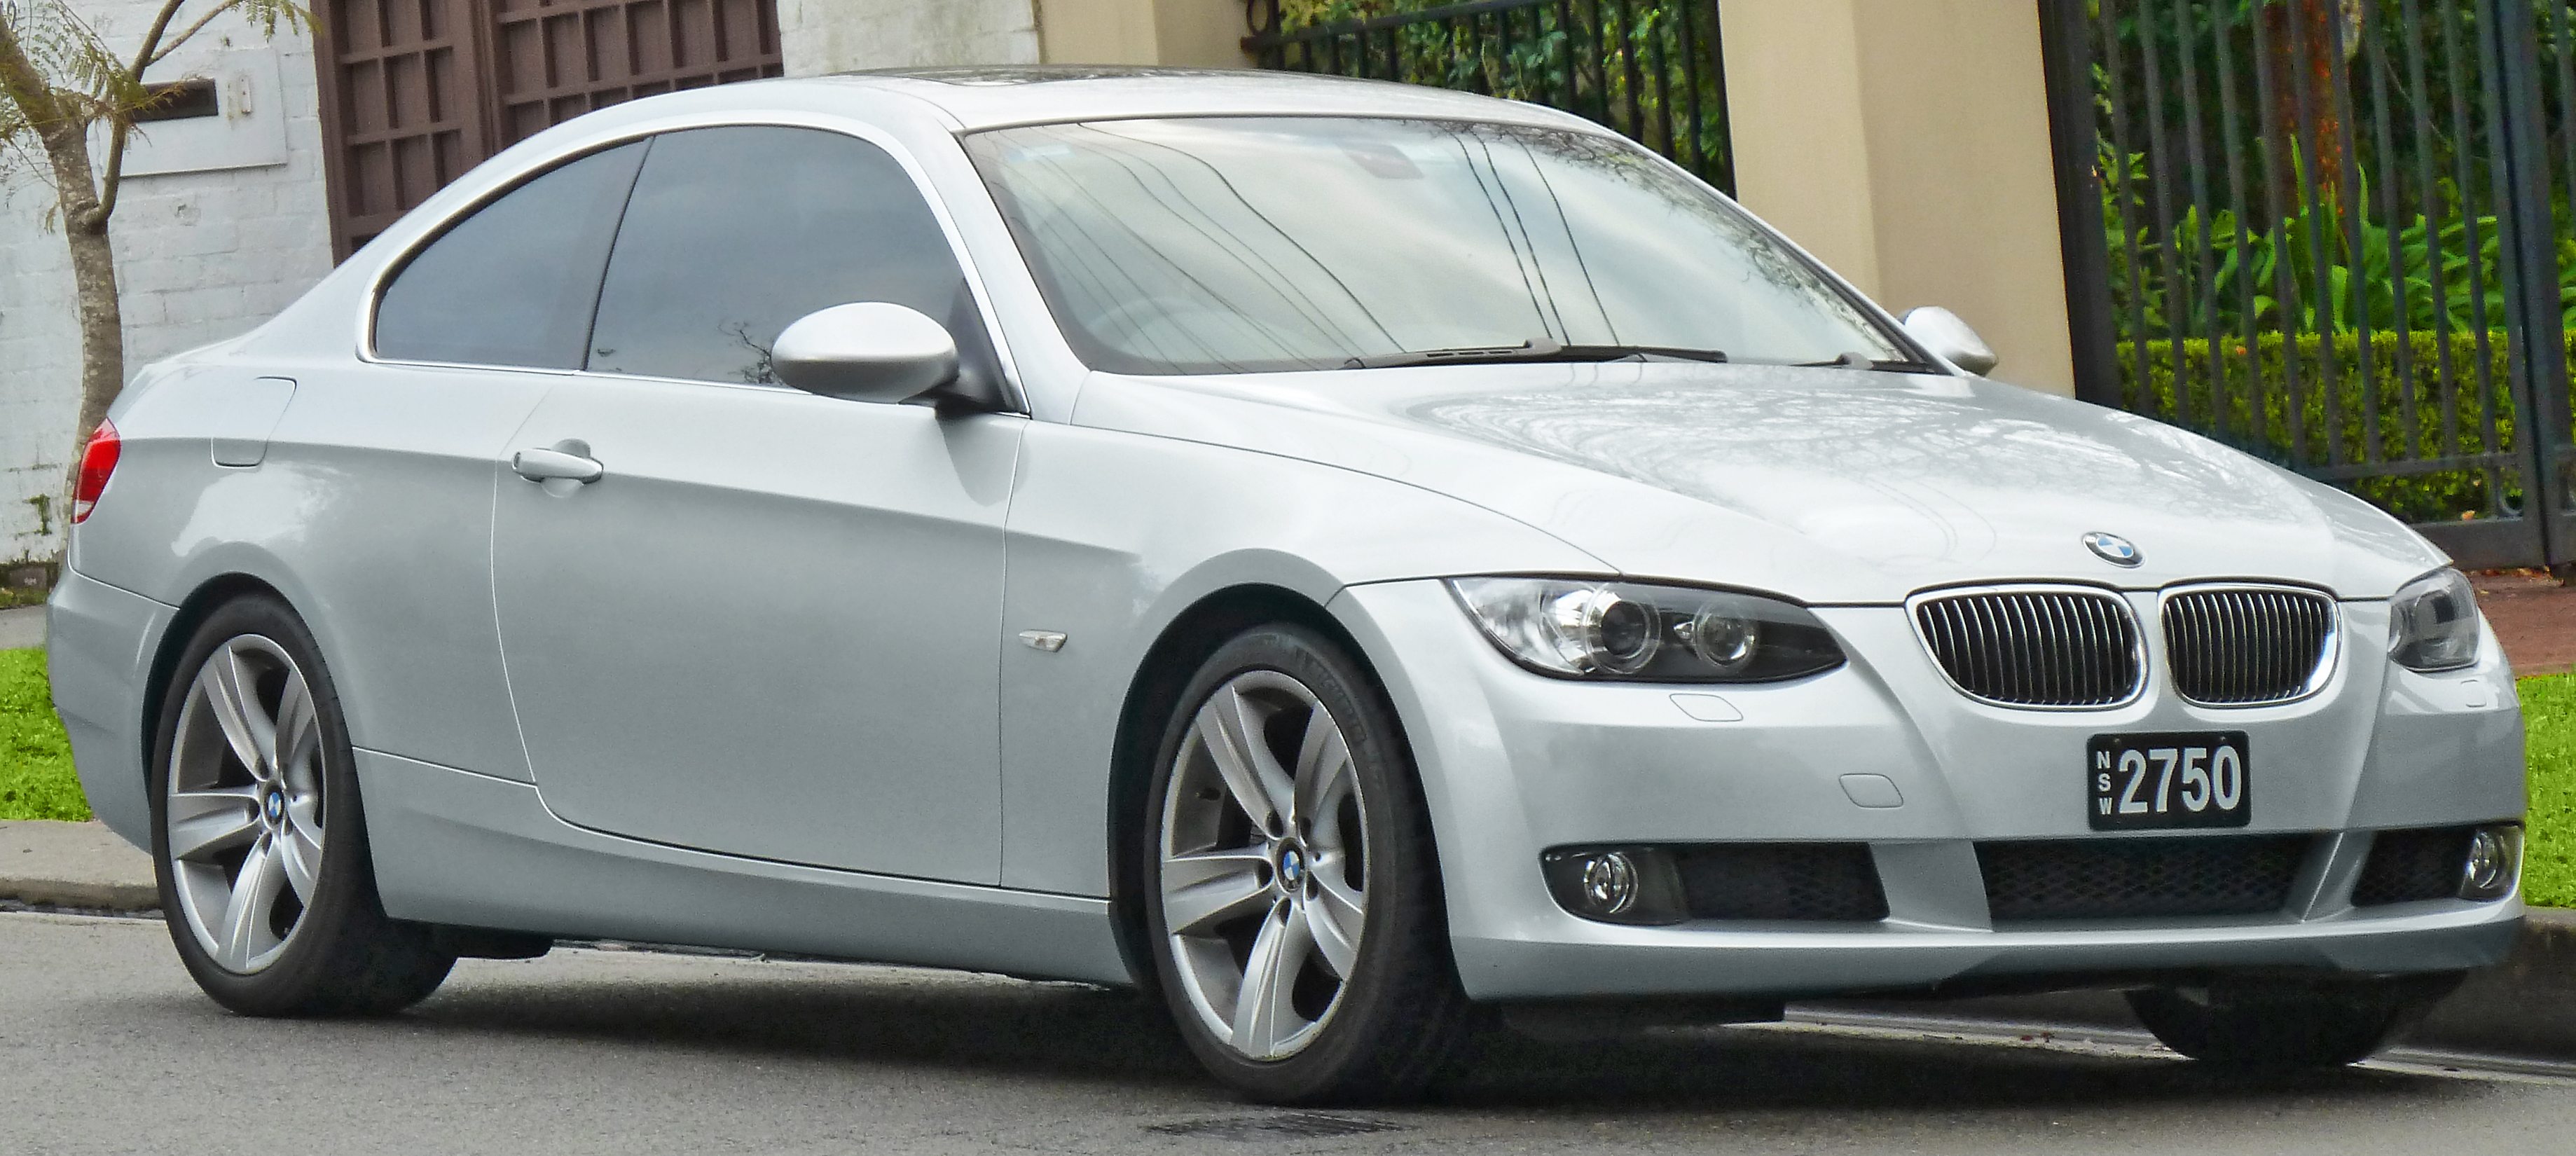 Автозапчастини на автомобіль BMW E92 (БМВ E92): огляд